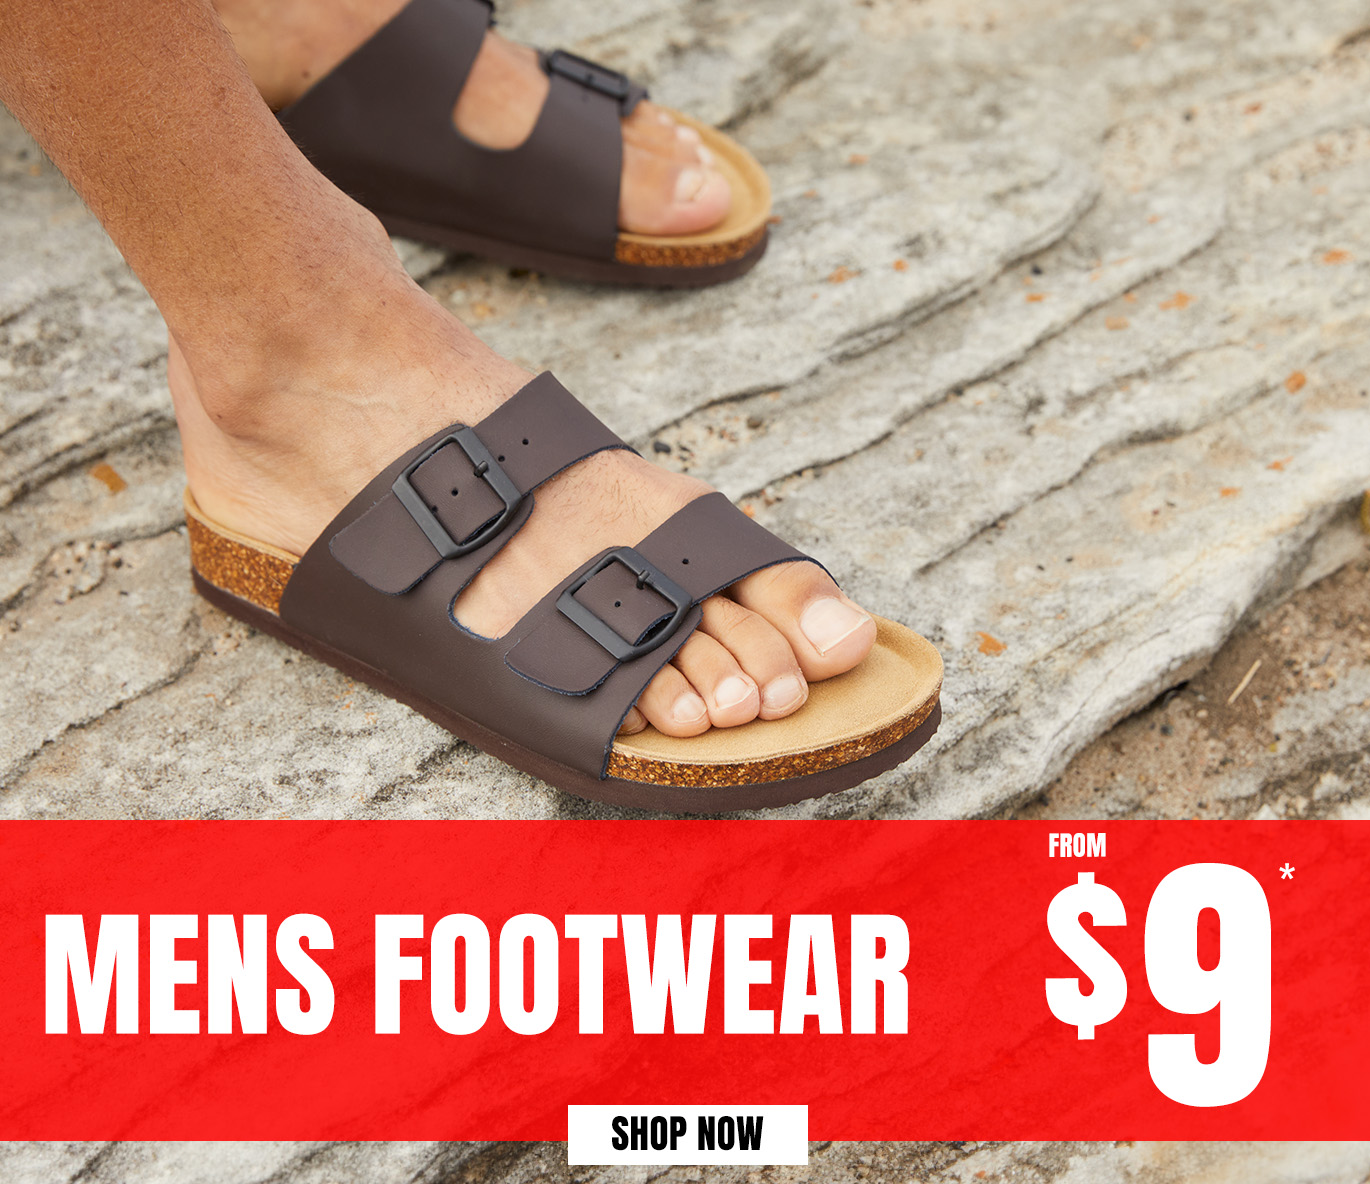 Rivers Mens Footwear form $9*